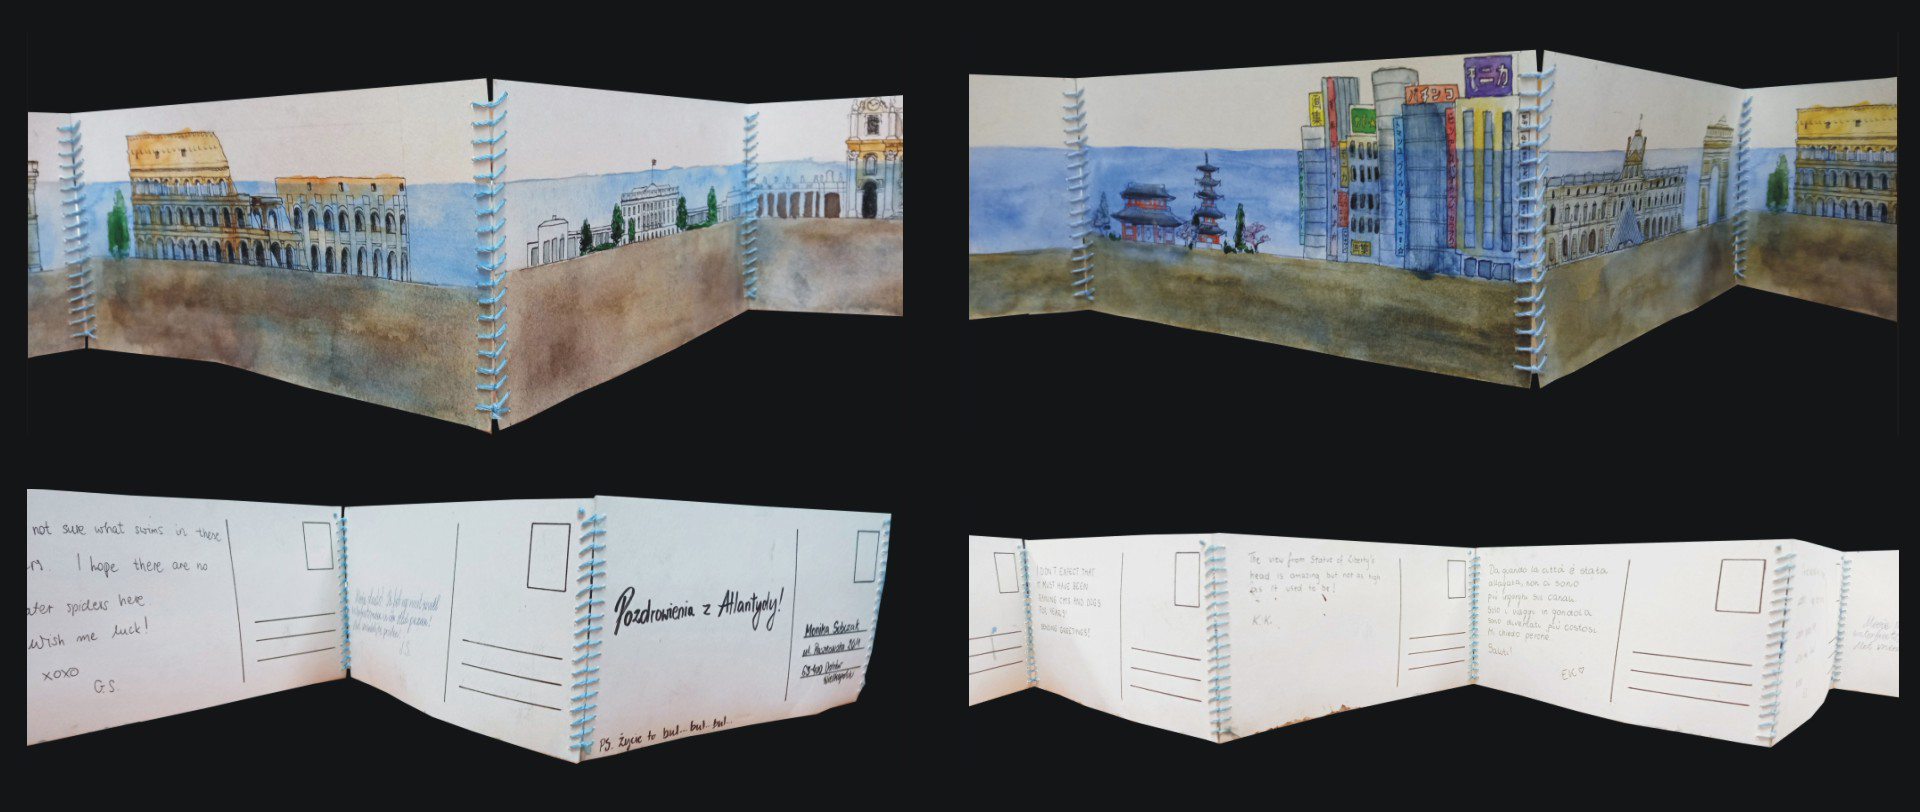 Unikatowa książka artystyczna, podnosząca problem topnienia lodowców, książka harmonijkowa, poszczególne strony wykonane ręcznie, przypominające pocztówki, kolorowe grafiki, pismo ręczne